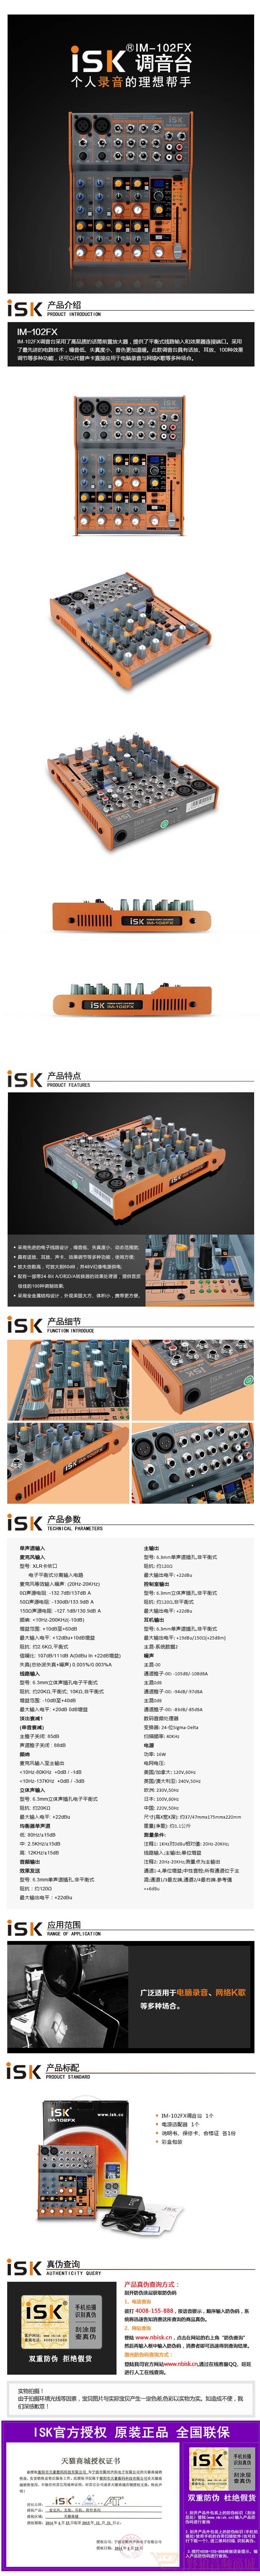 ISK IM-102FX专业数字调音台